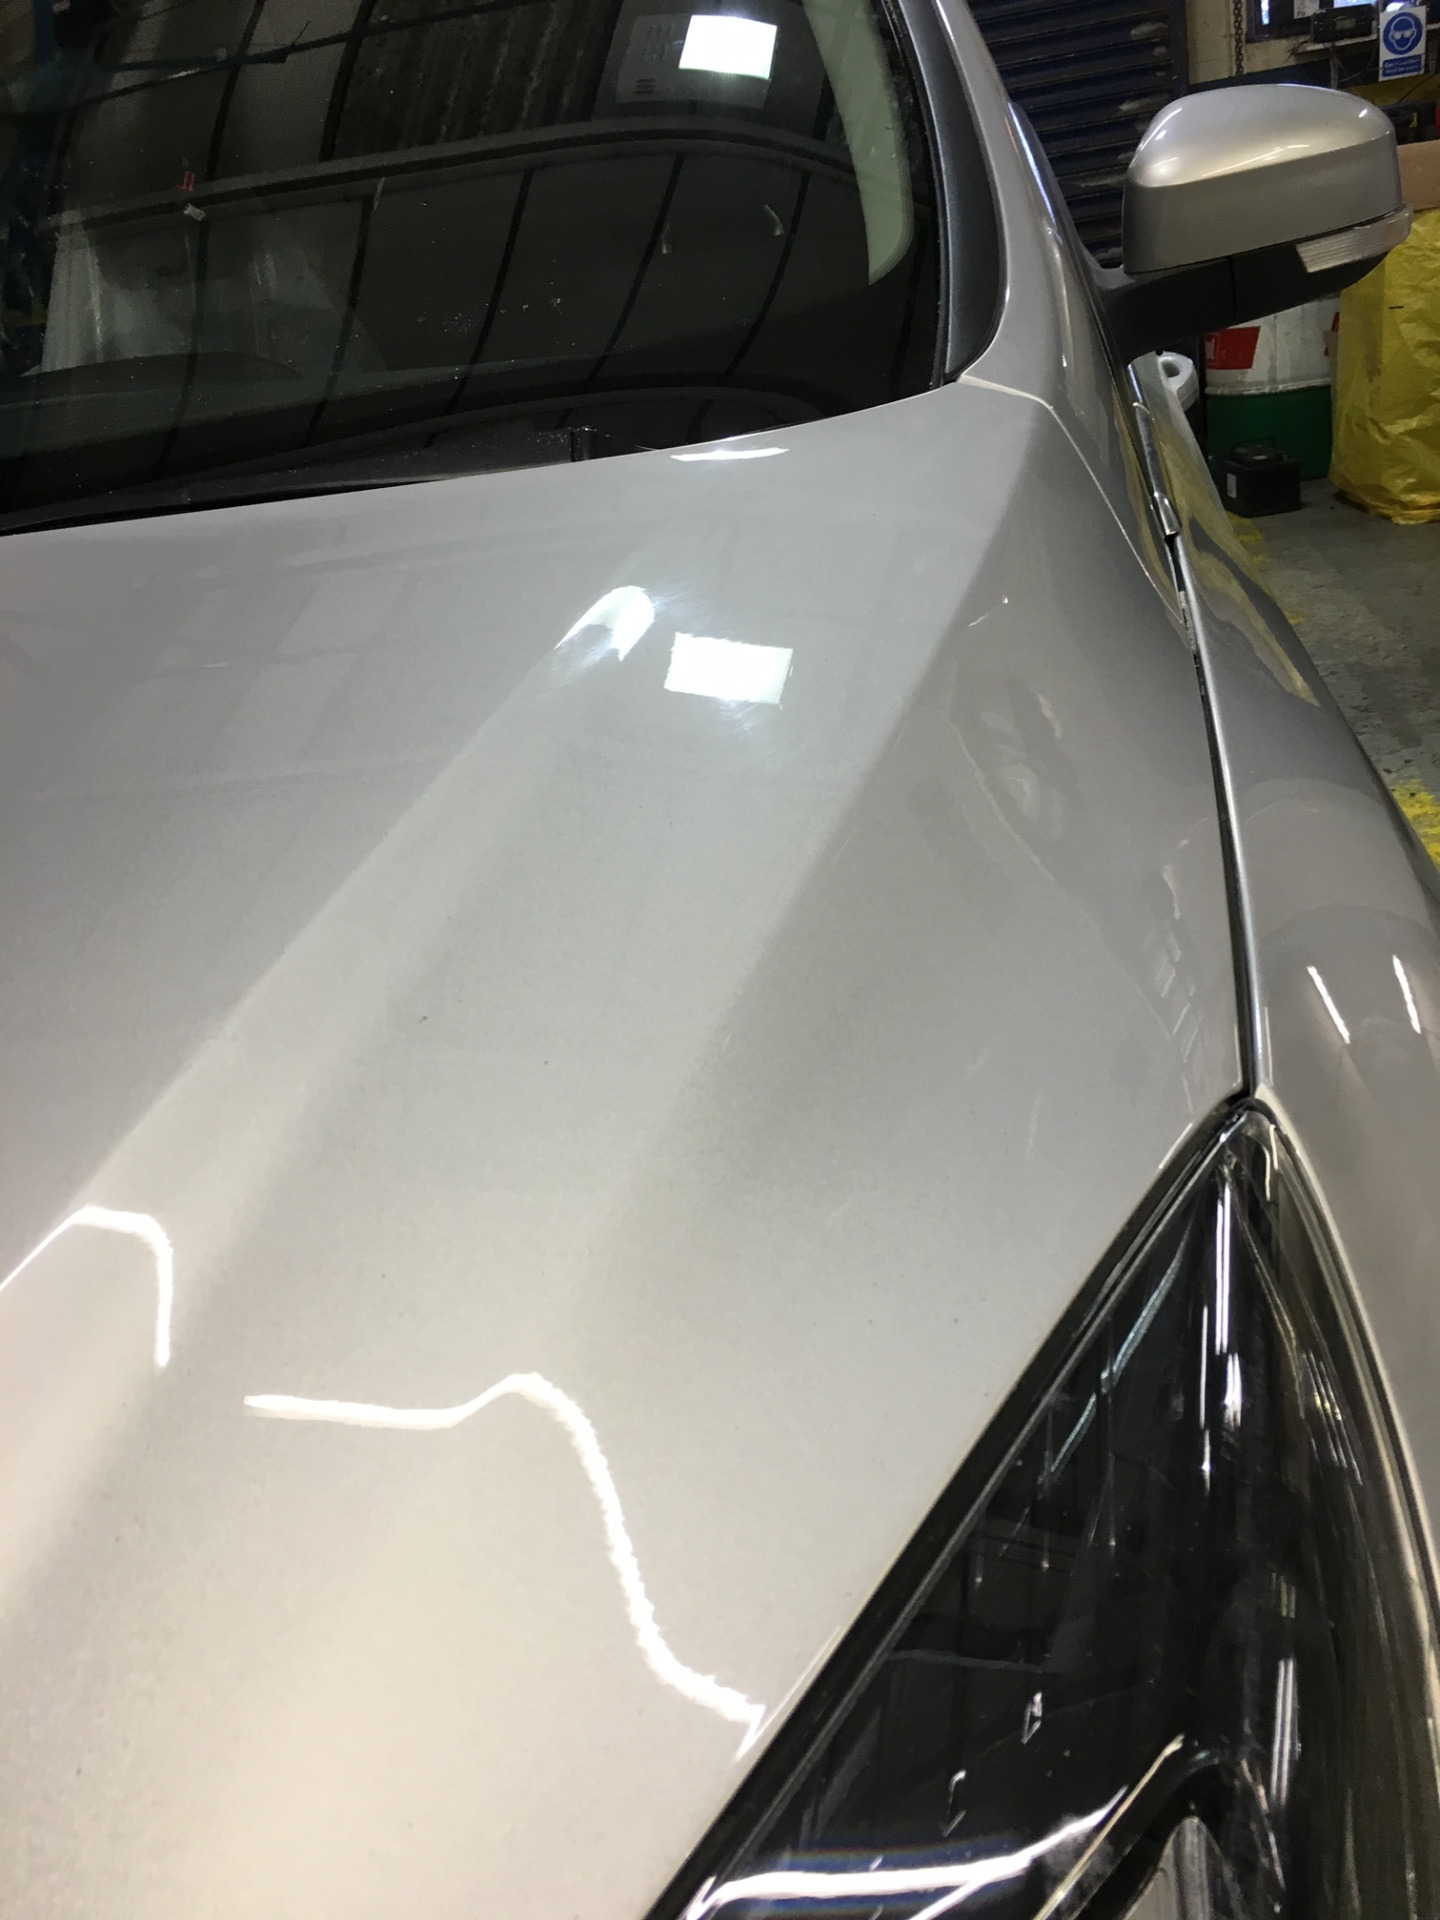 Paintless car body dent repair